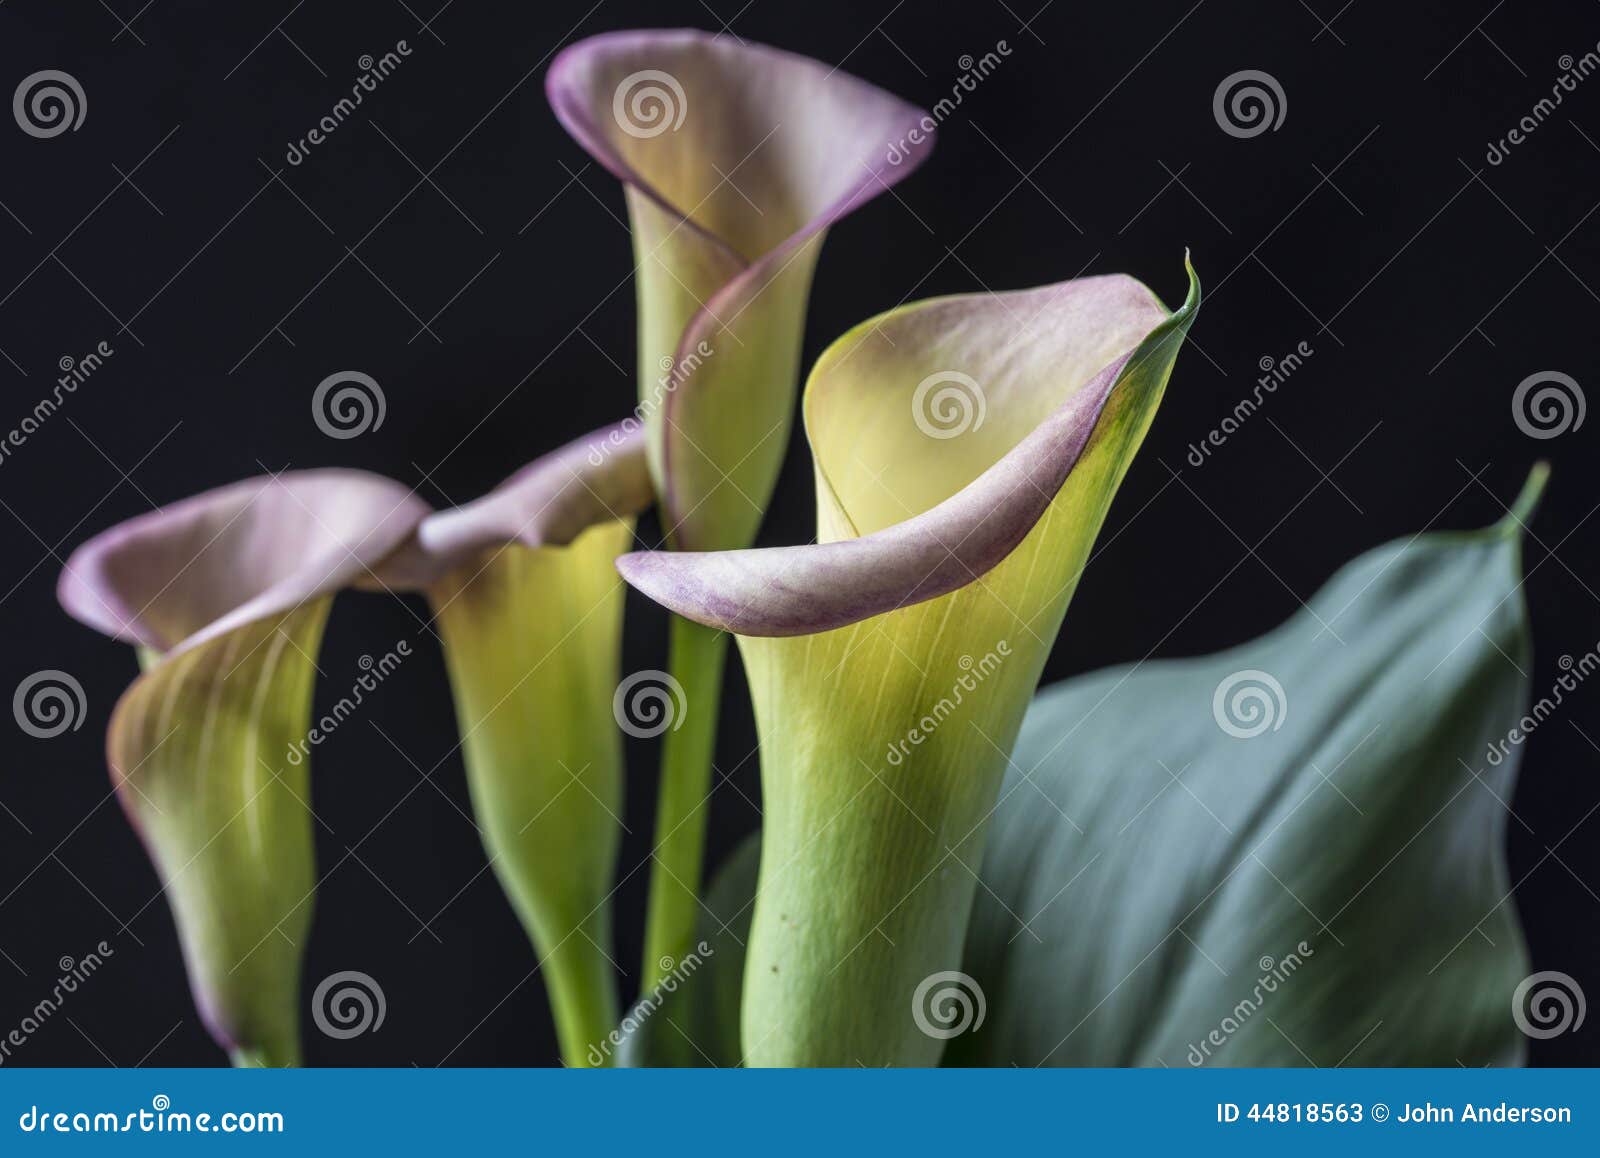 Zantedeschia Aethiopica, Calla Lily Stock Image - Image of studio ...